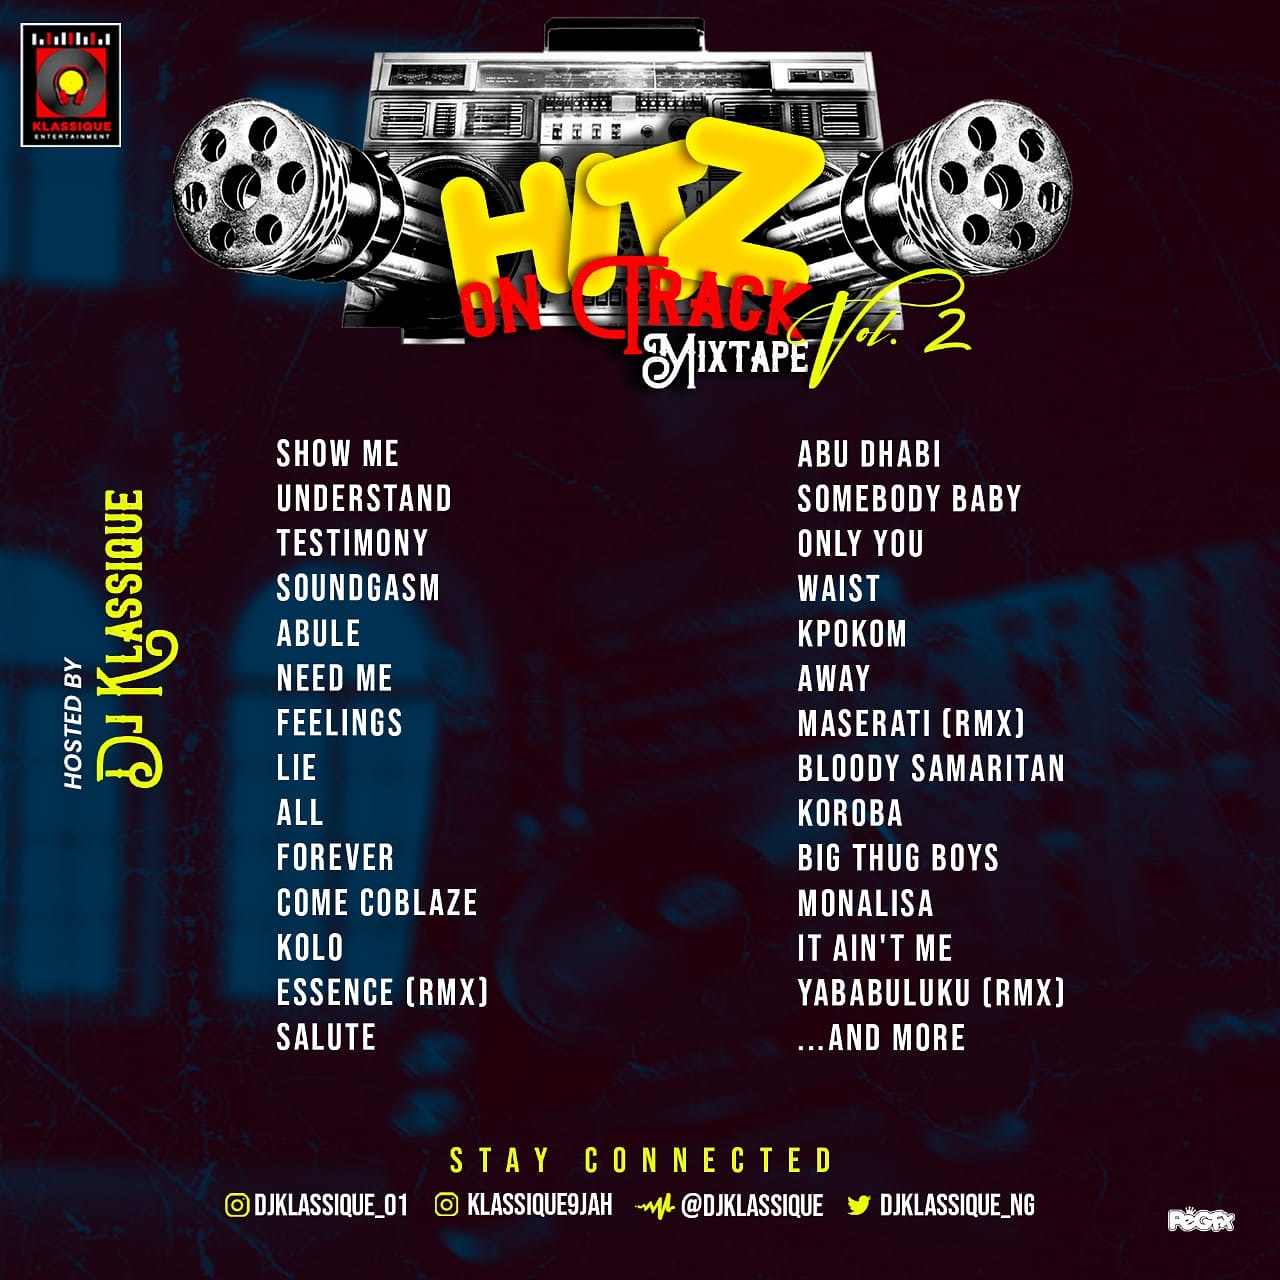 Mixtape: Dj Klassique - Hitz On Track Vol. 2